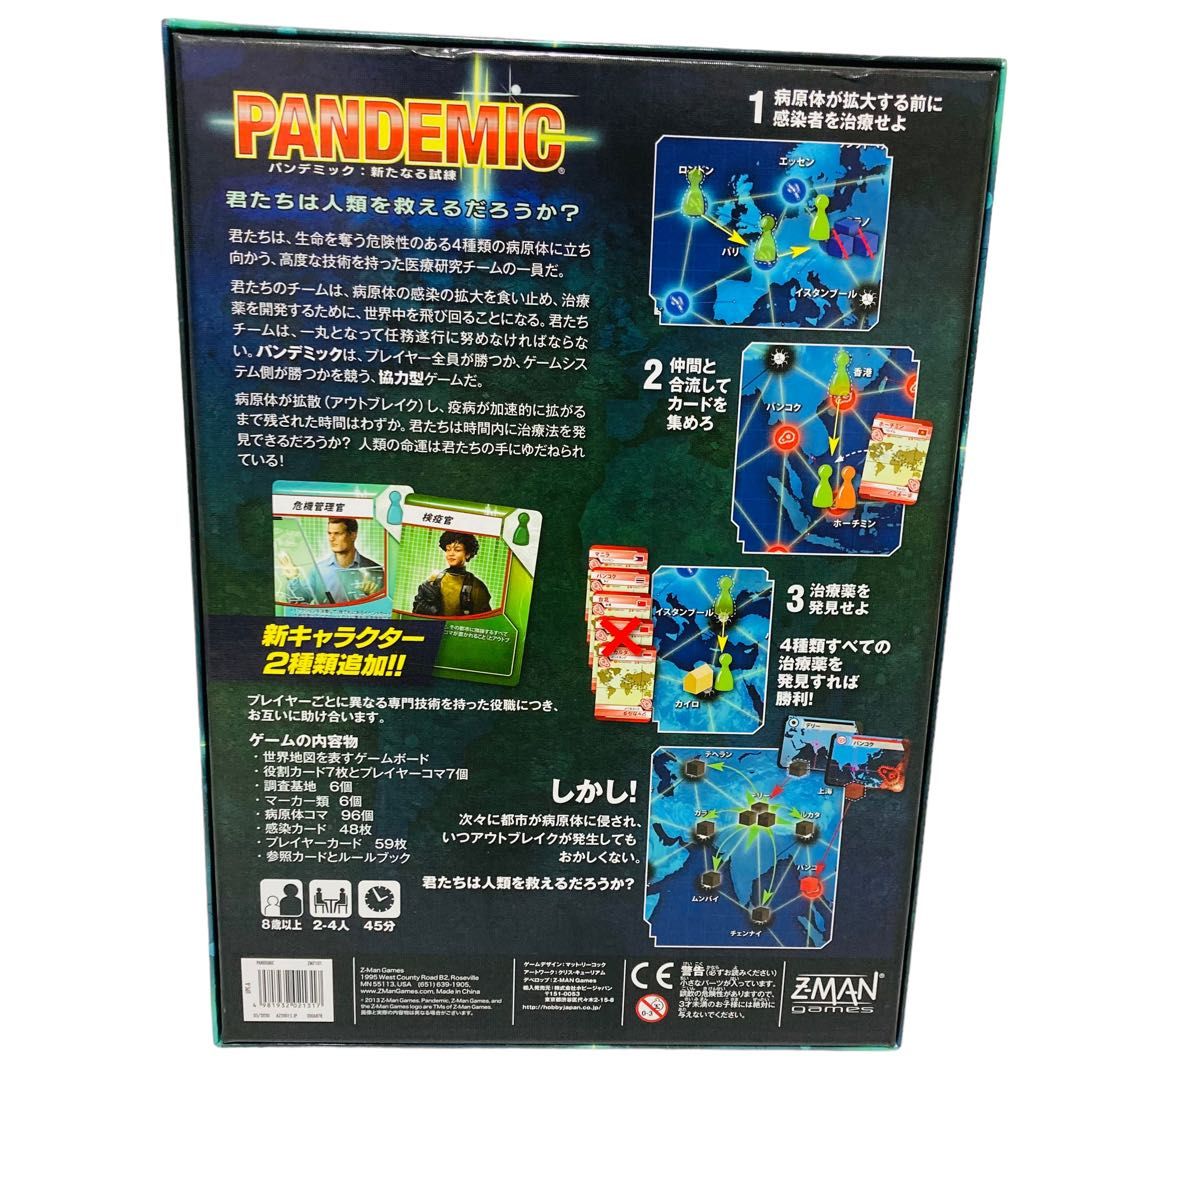 ボードゲーム パンデミック 新たなる試練 日本語版 PANDEMIC ホビージャパン